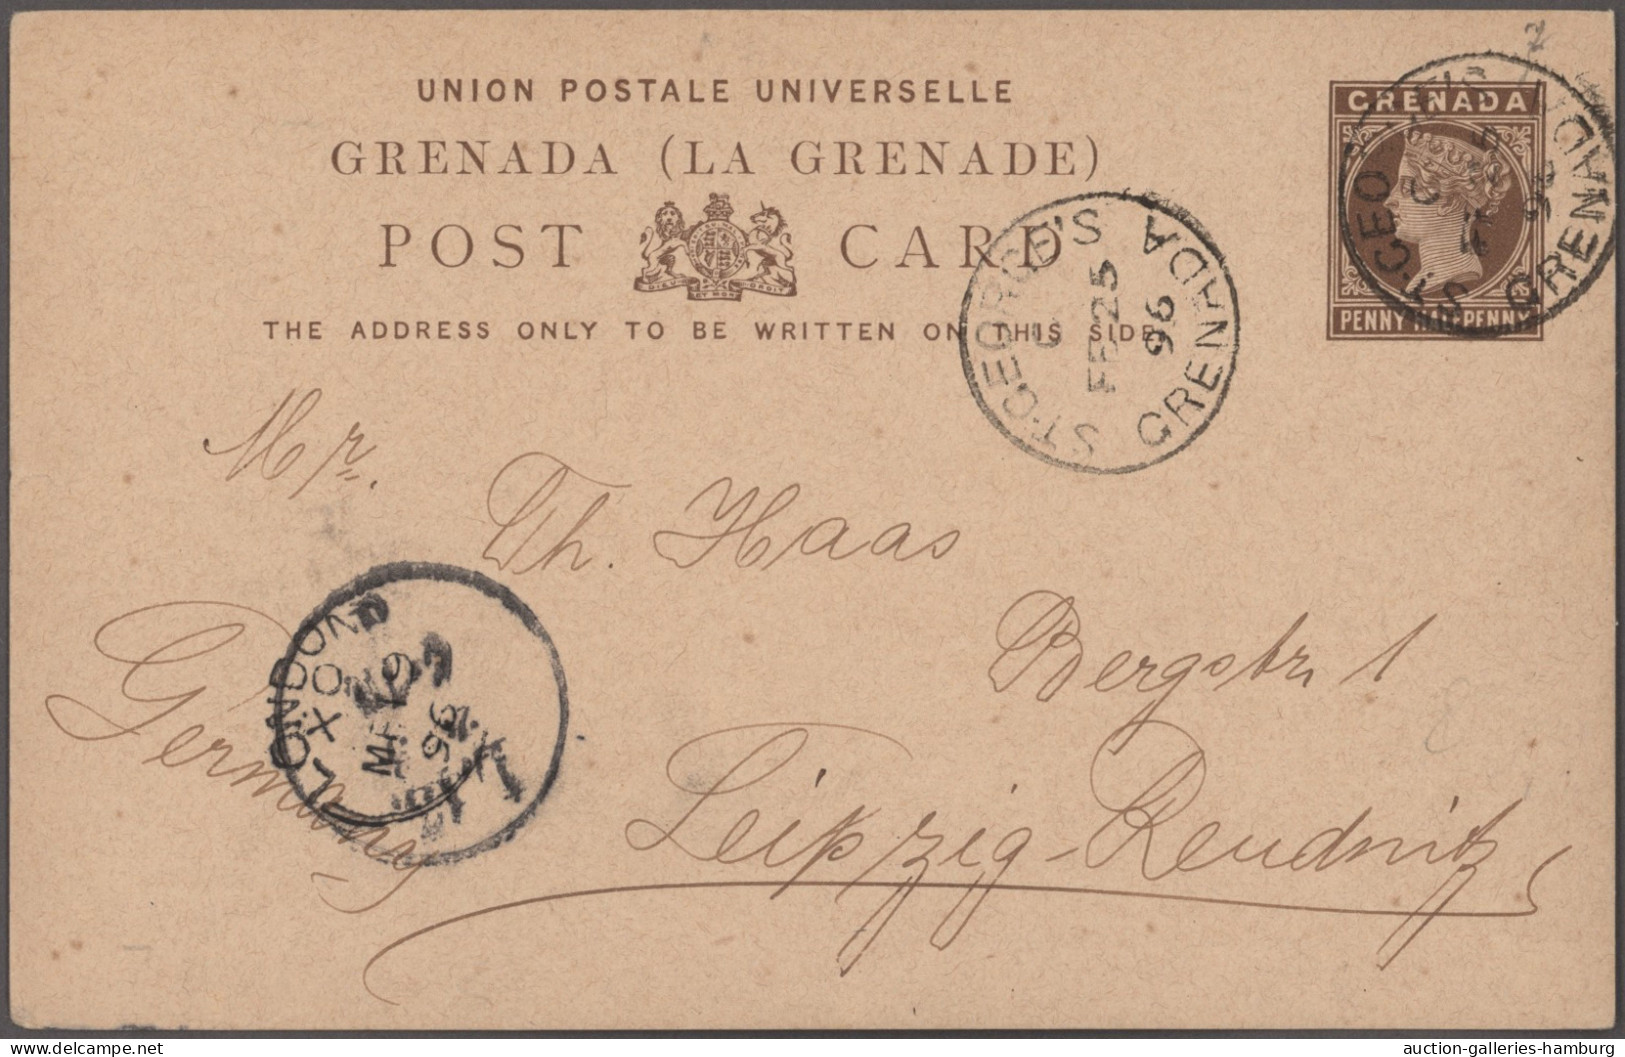 Grenada - postal stationery: 1891/1914, Posten von zwölf gebrauchten Ganzsachen,